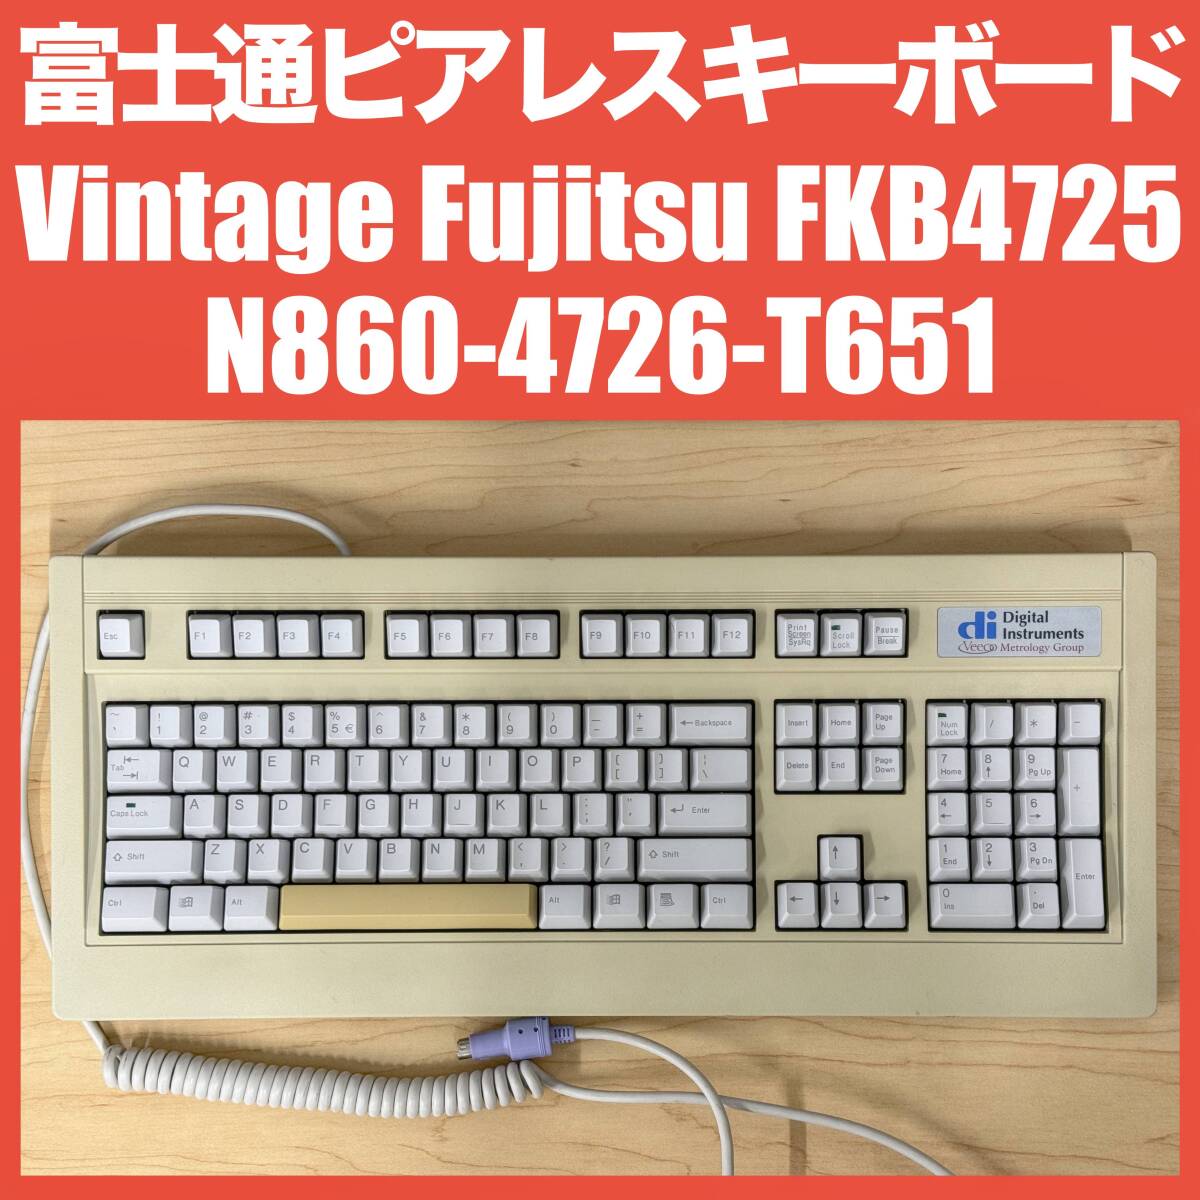 Fujitsu ピアレスキーボード FKB4725 series N860-4726-T651 FKB4726-651 Windowsキー付US配列 PS/2接続 クラシック ビンテージ 富士通の画像1